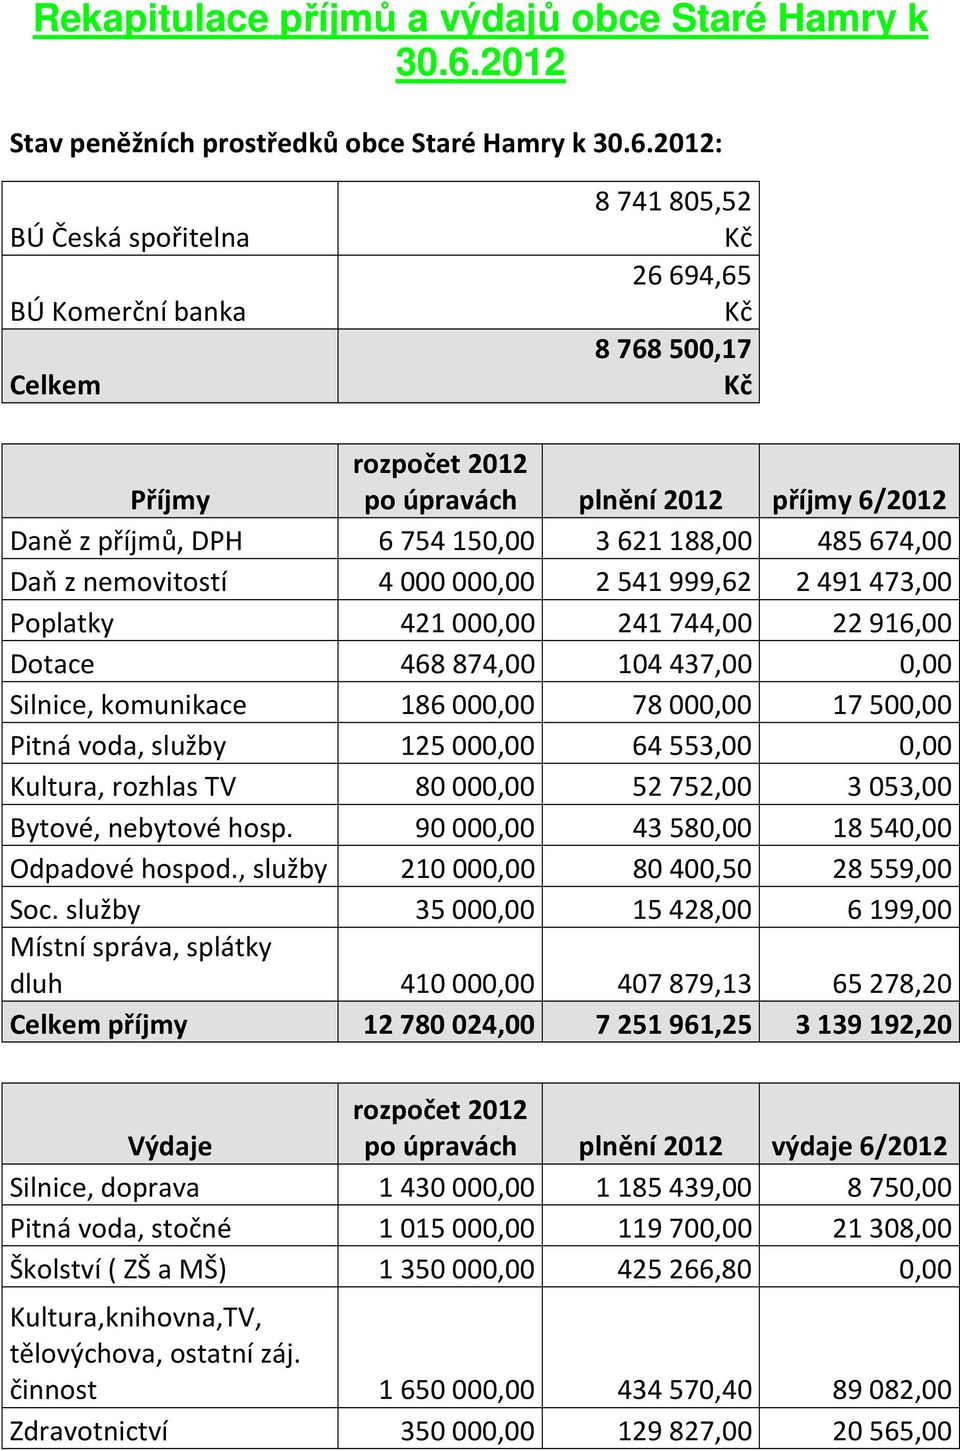 2012: BÚ Česká spořitelna BÚ Komerční banka Celkem 8741805,52 Kč 26694,65 Kč 8768500,17 Kč Příjmy rozpočet 2012 po úpravách plnění 2012 příjmy 6/2012 Daně z příjmů, DPH 6754150,00 3621188,00